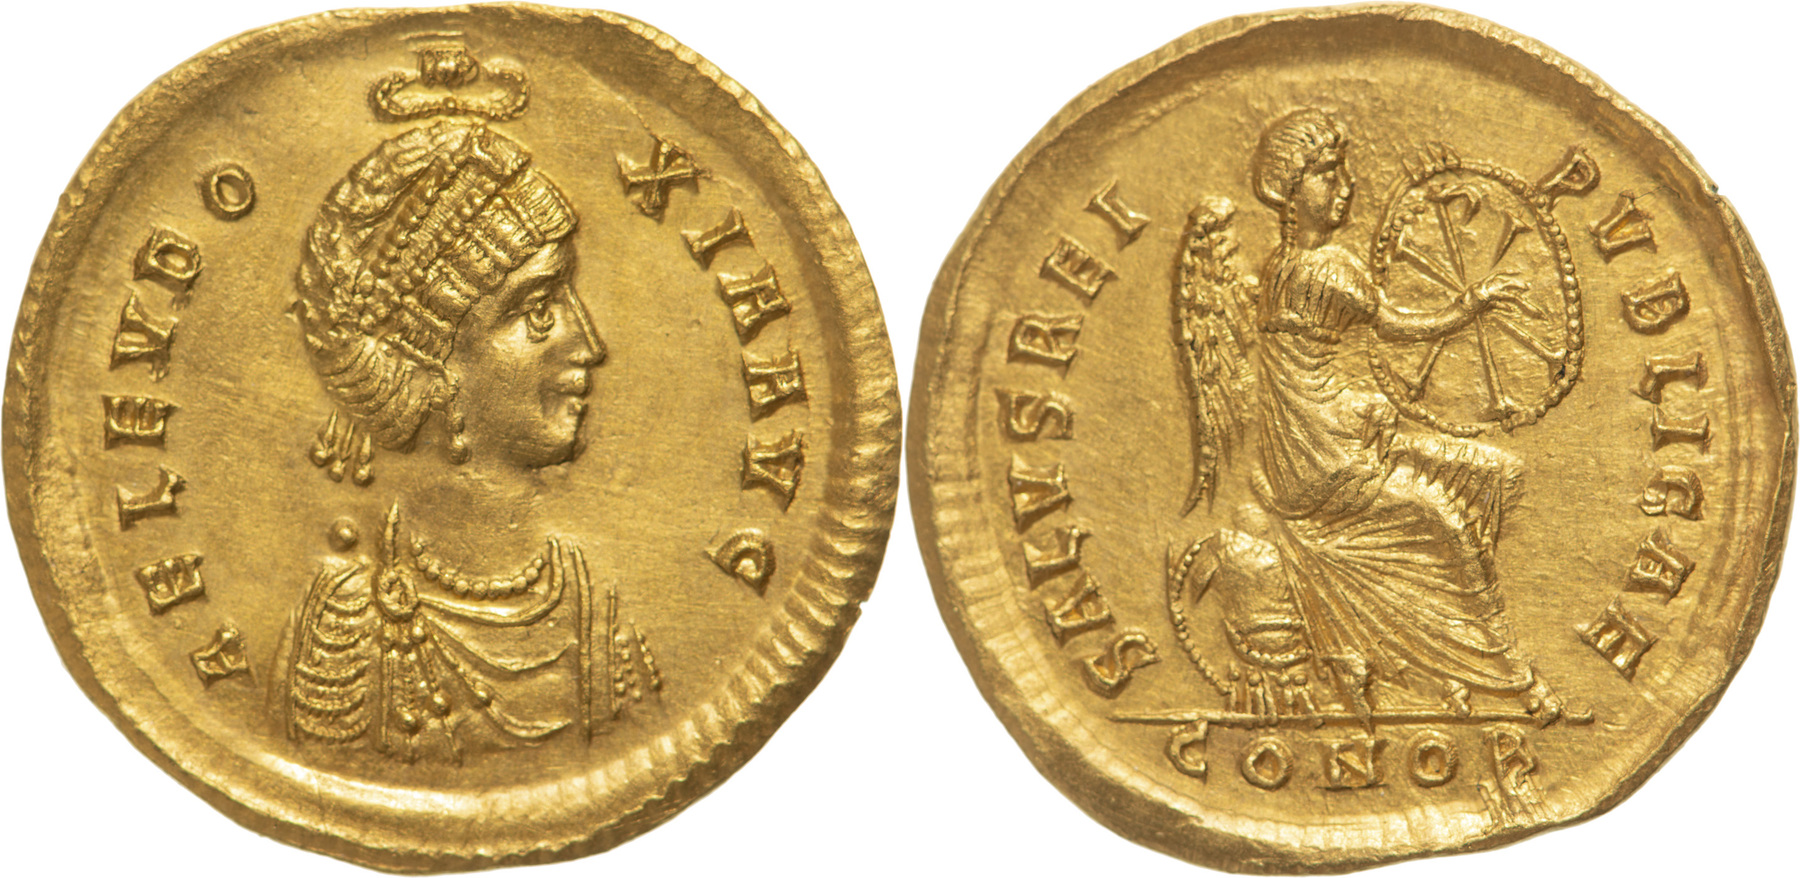 Aelia Eudoxia, Augusta, 400-404. Solidus, GOLD, Constantinople